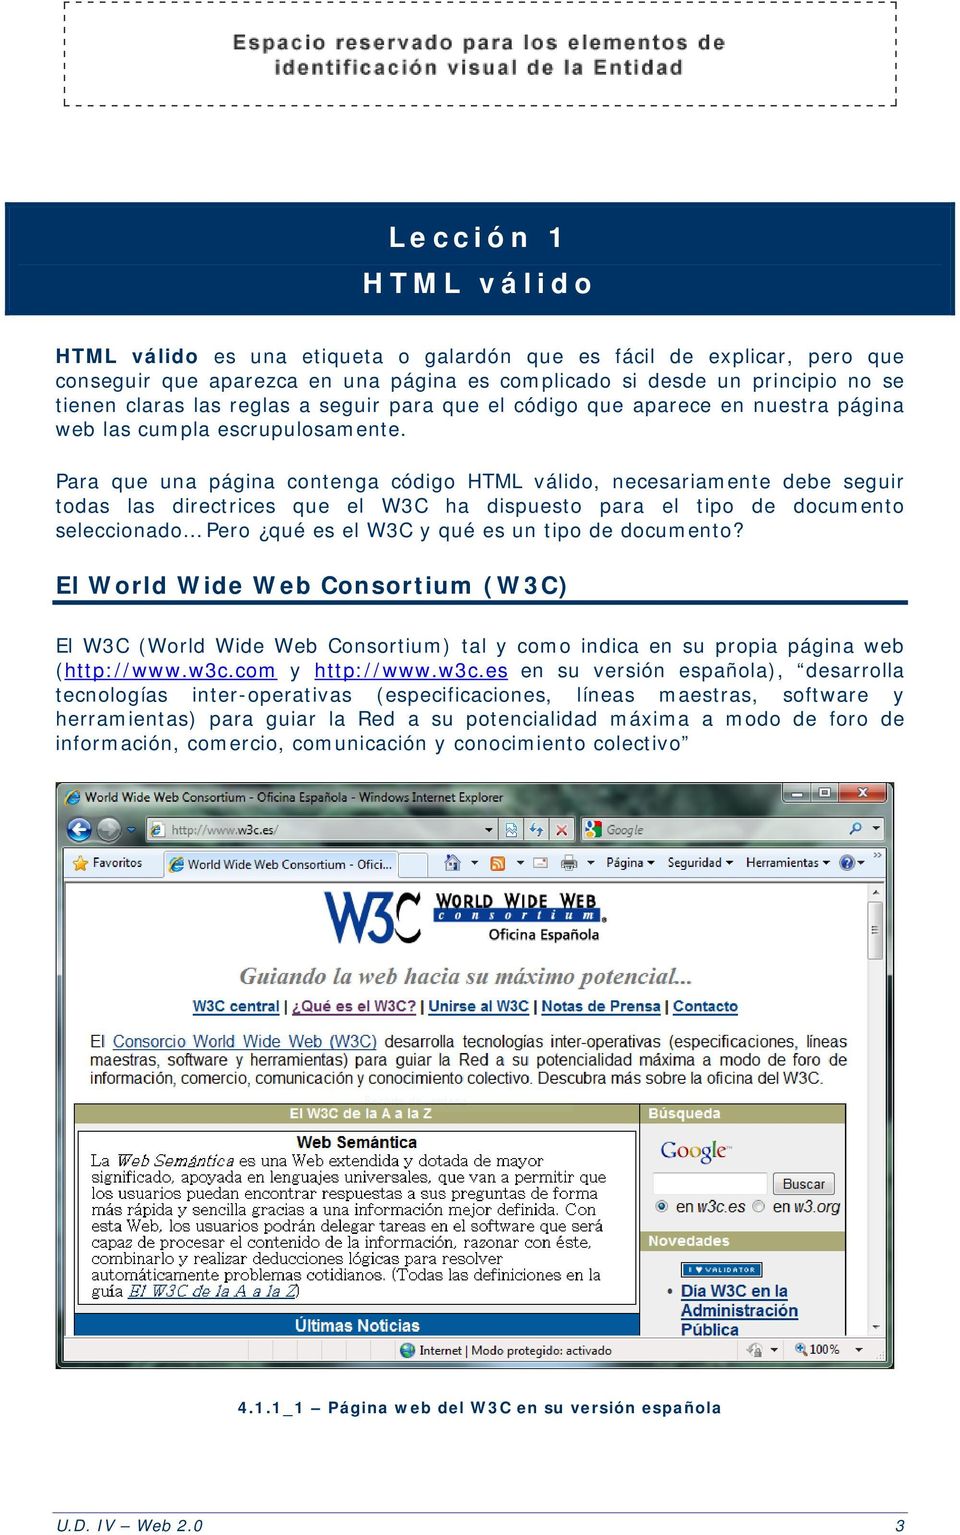 Para que una página contenga código HTML válido, necesariamente debe seguir todas las directrices que el W3C ha dispuesto para el tipo de documento seleccionado Pero qué es el W3C y qué es un tipo de